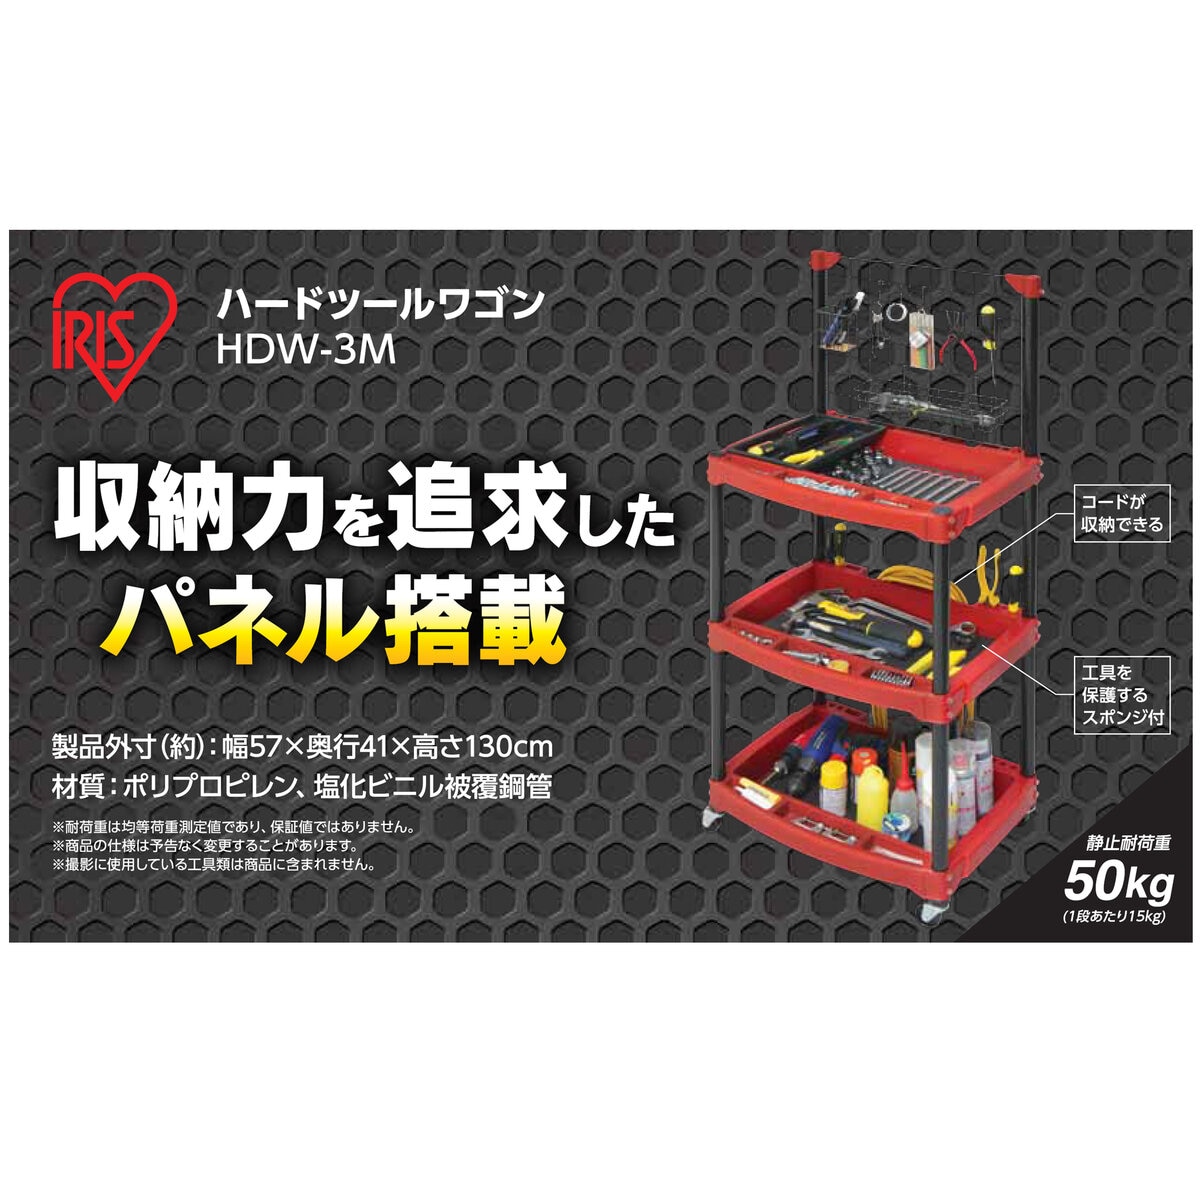 アイリスオーヤマ ハードツールワゴン メッシュパネル付 HDW-3M レッド Costco Japan